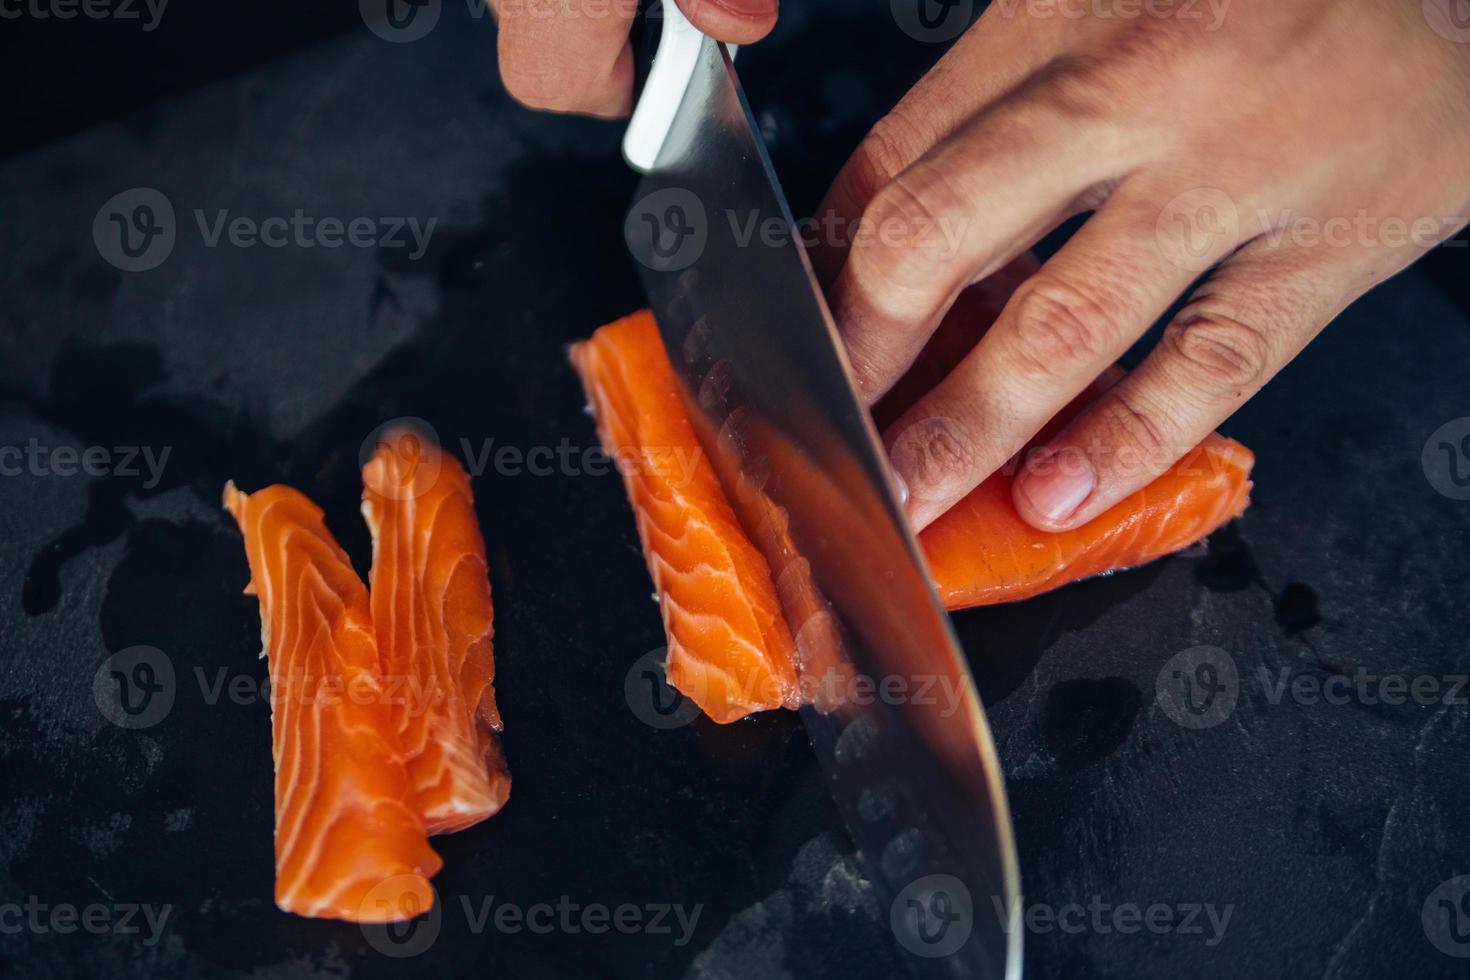 cortando salmão em uma placa de ardósia foto